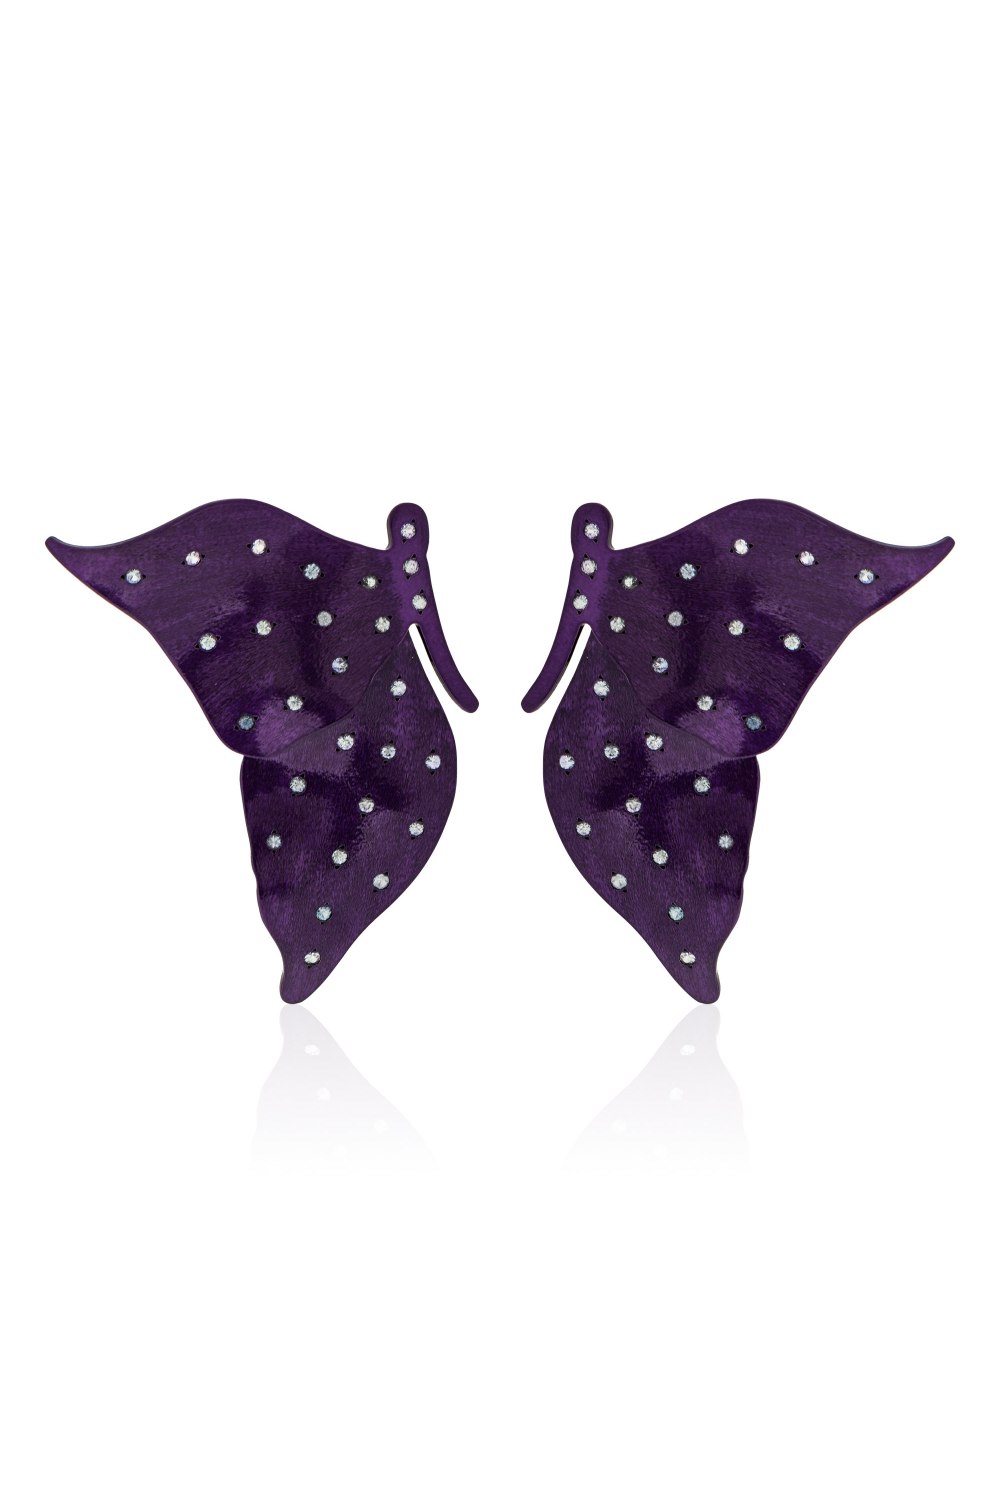 Social Butterfly Earrings